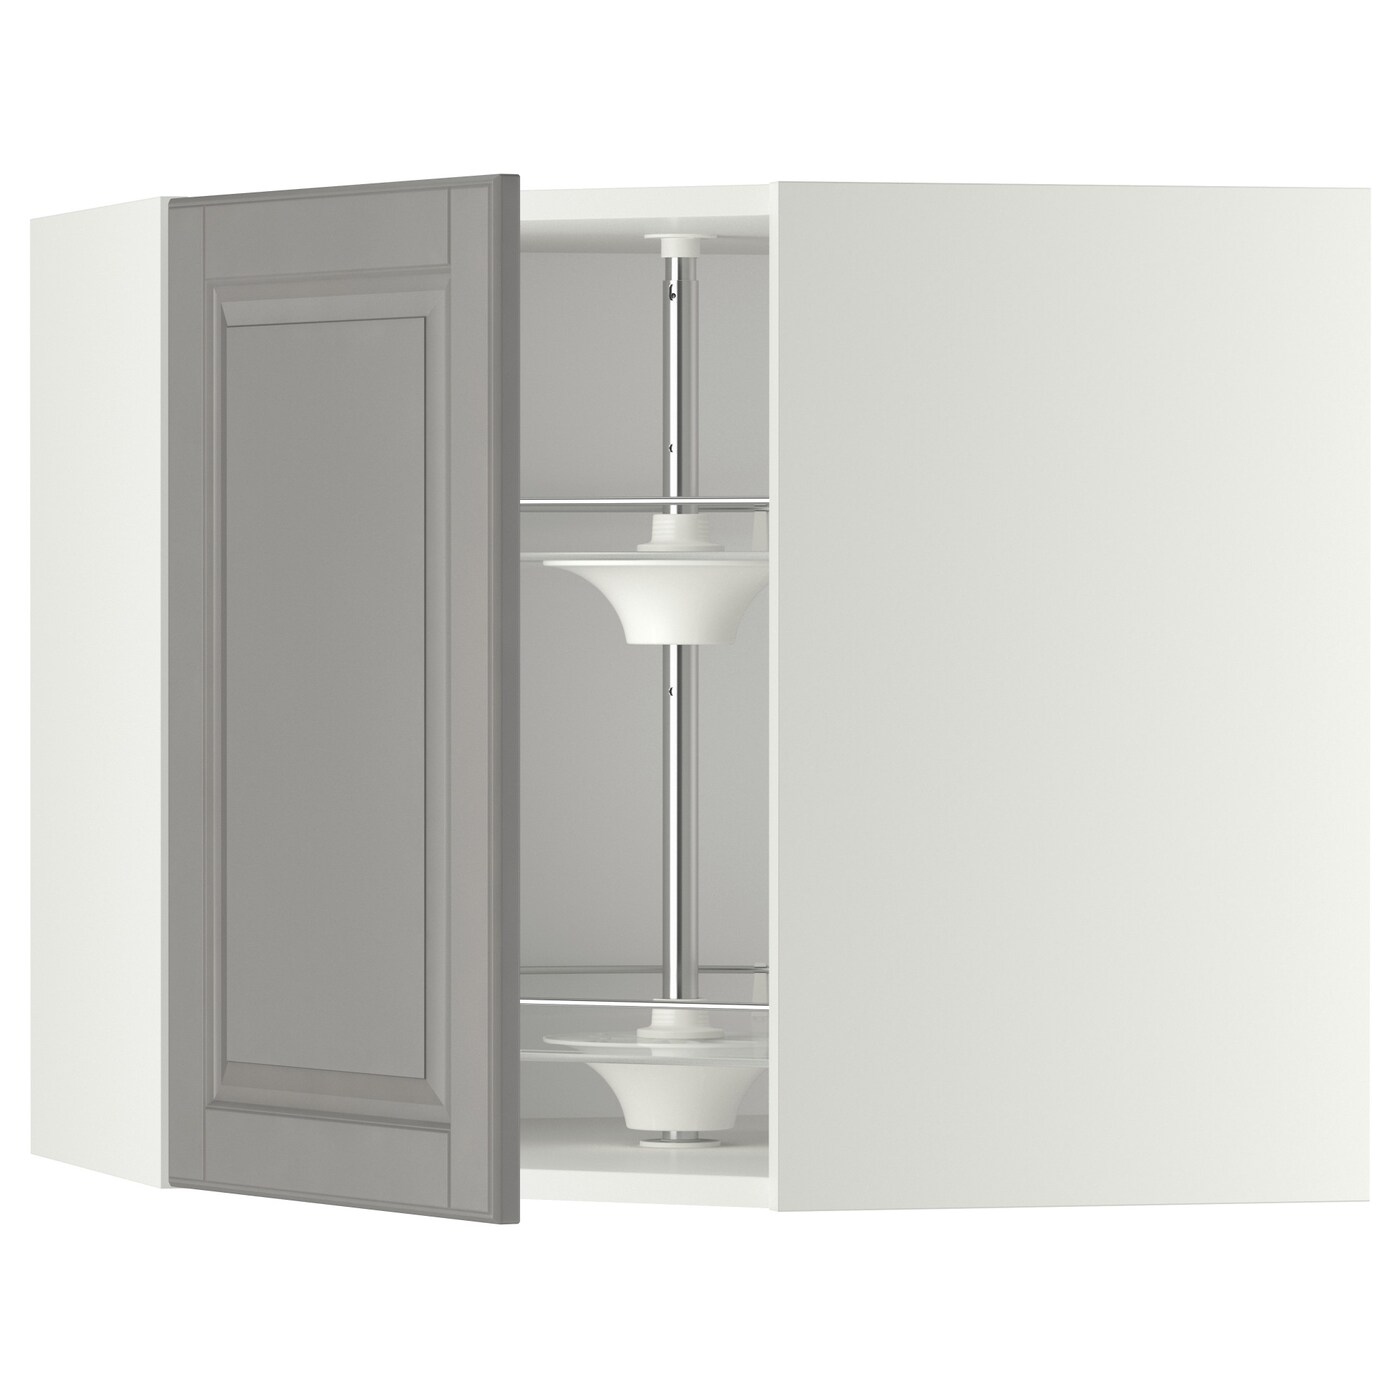 Угловой навесной шкаф с каруселью - METOD  IKEA/  МЕТОД ИКЕА, 60х68 см, белый/серый